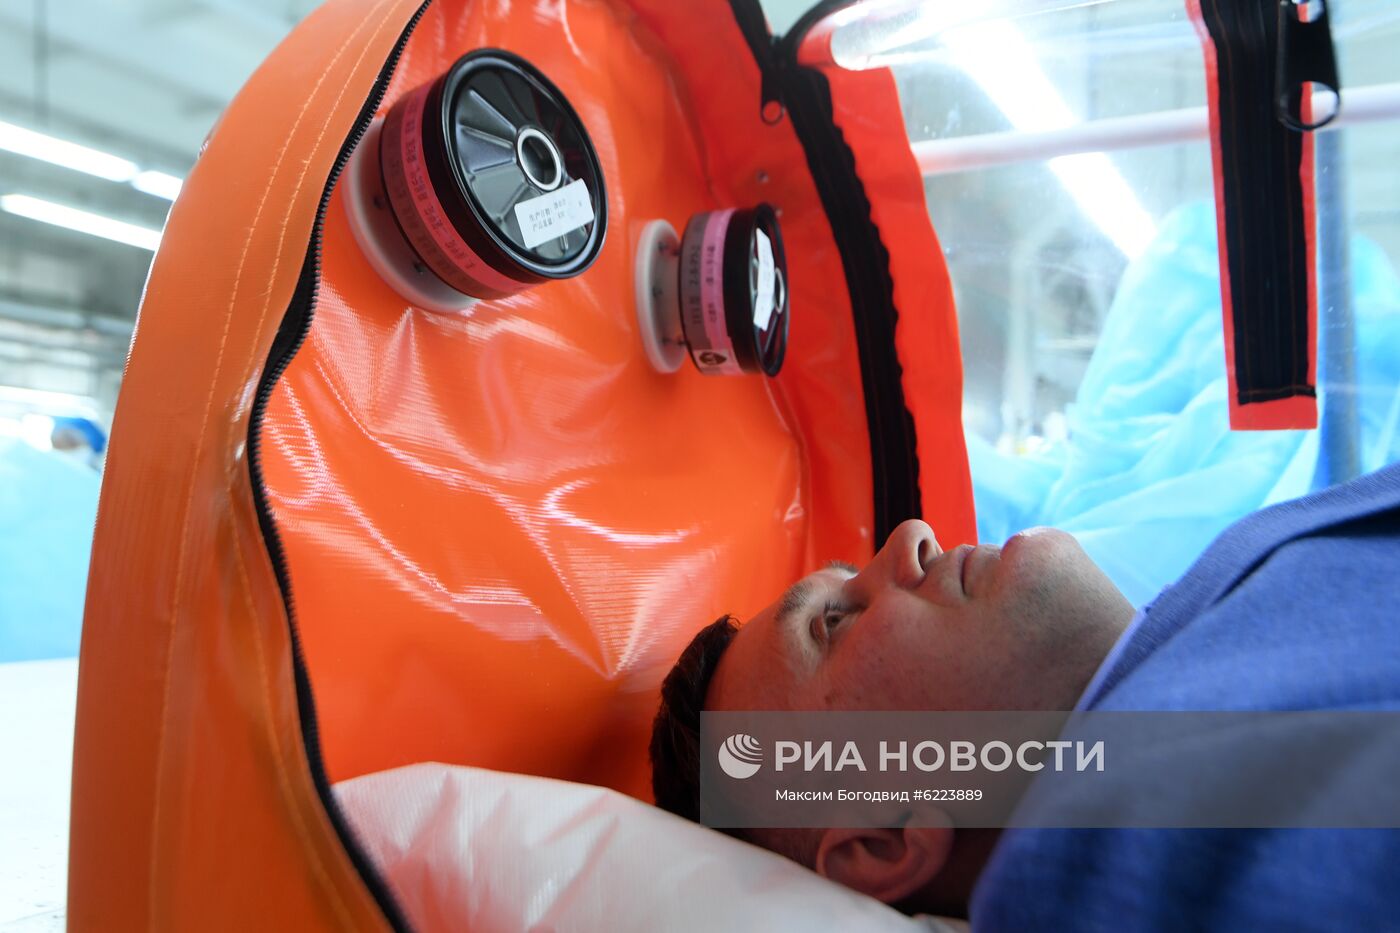 Производство защитных костюмов в Татарстане